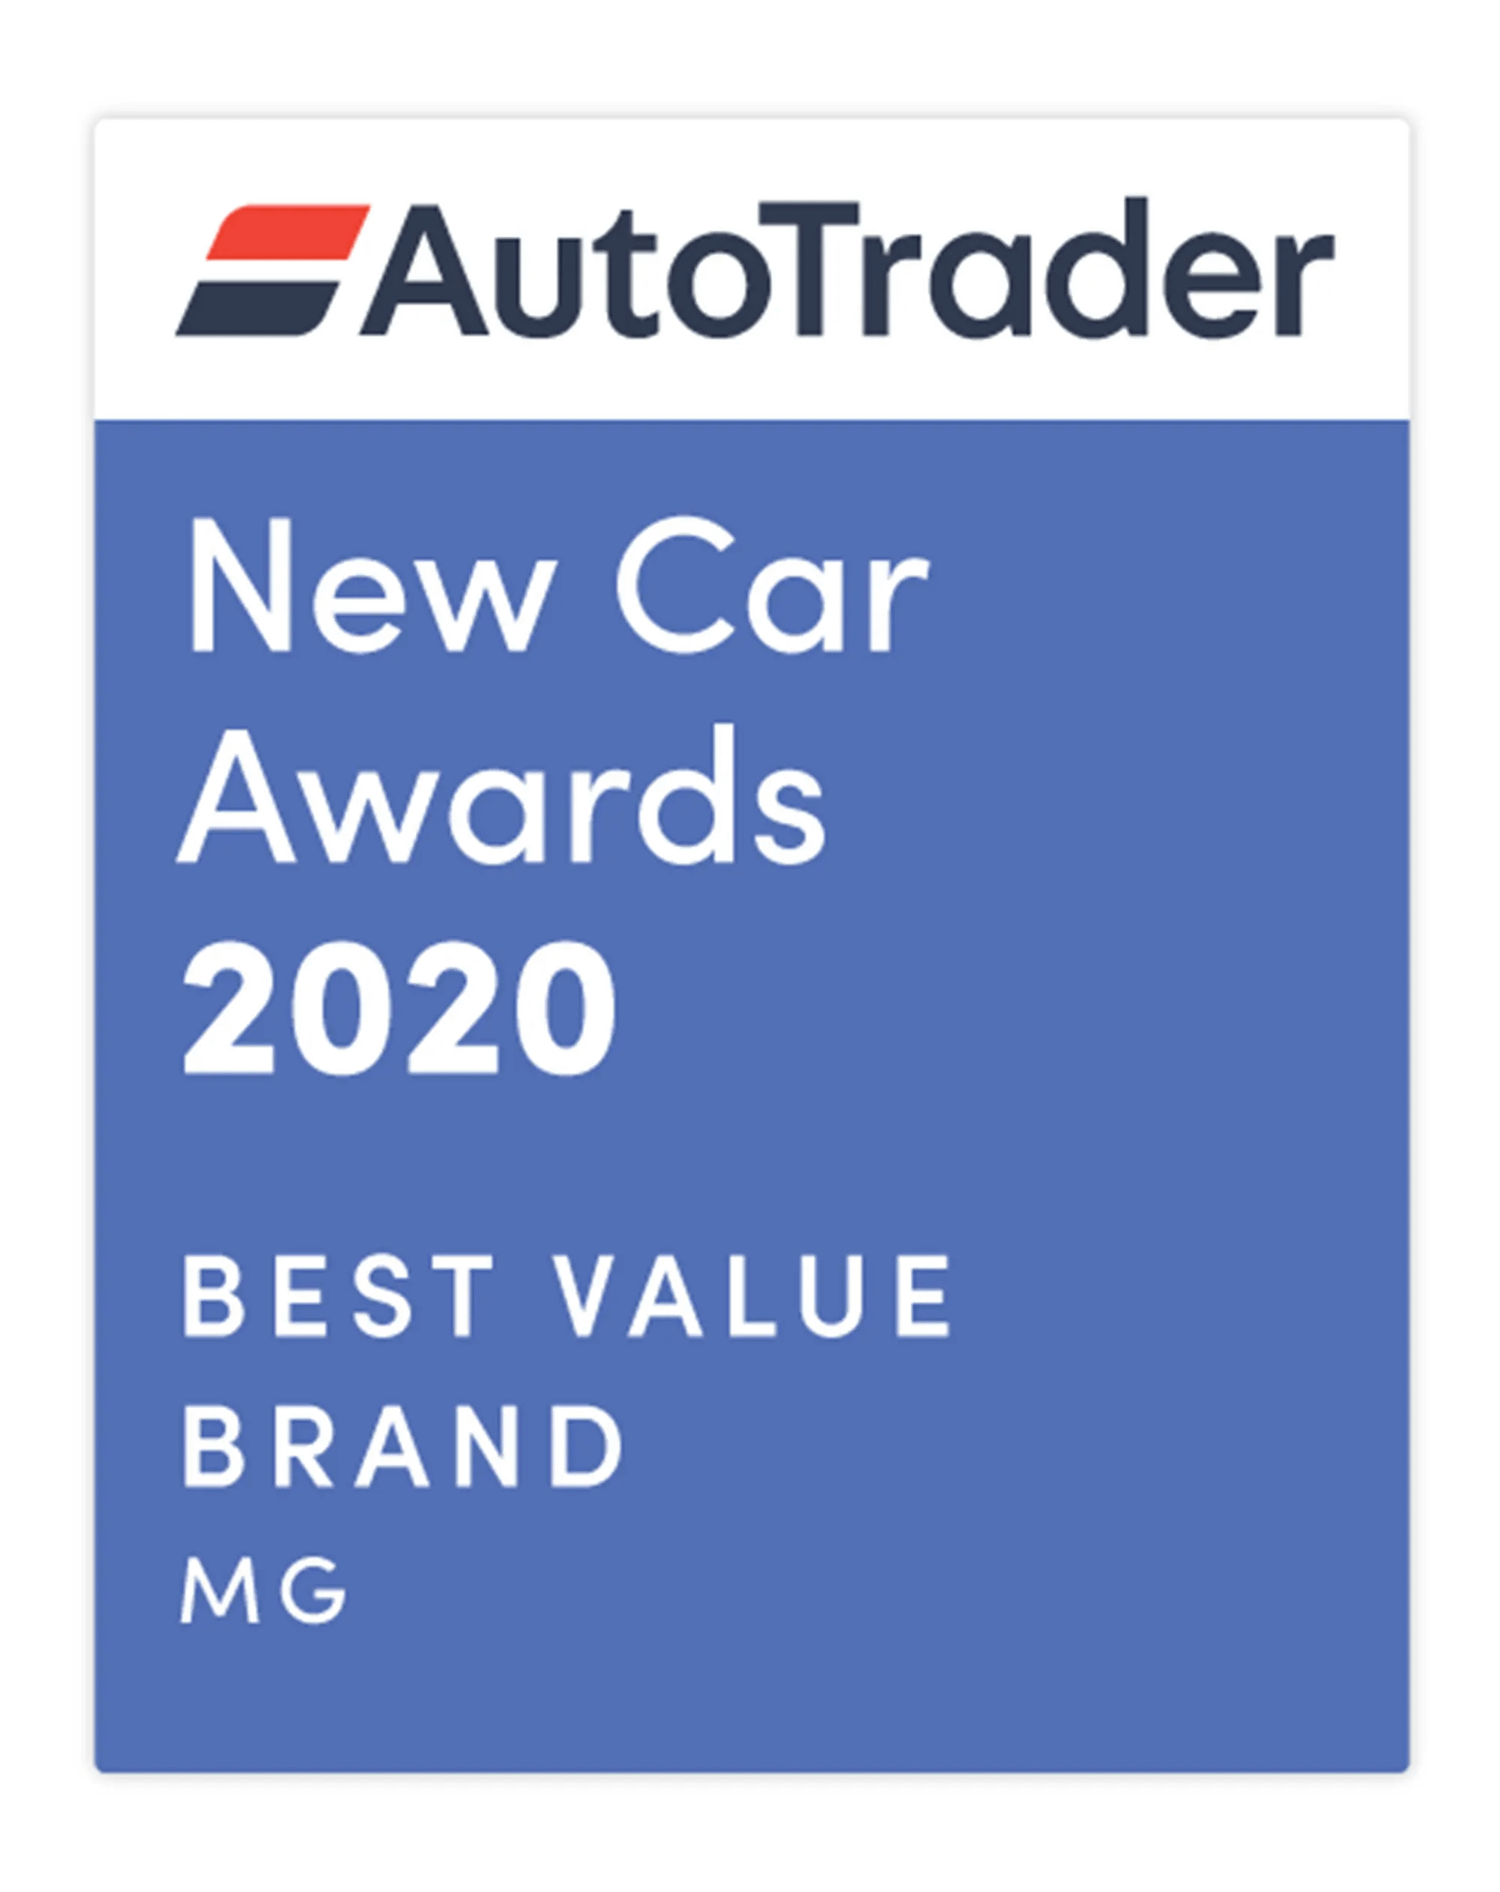 AutoTrader New Car Awards 2020